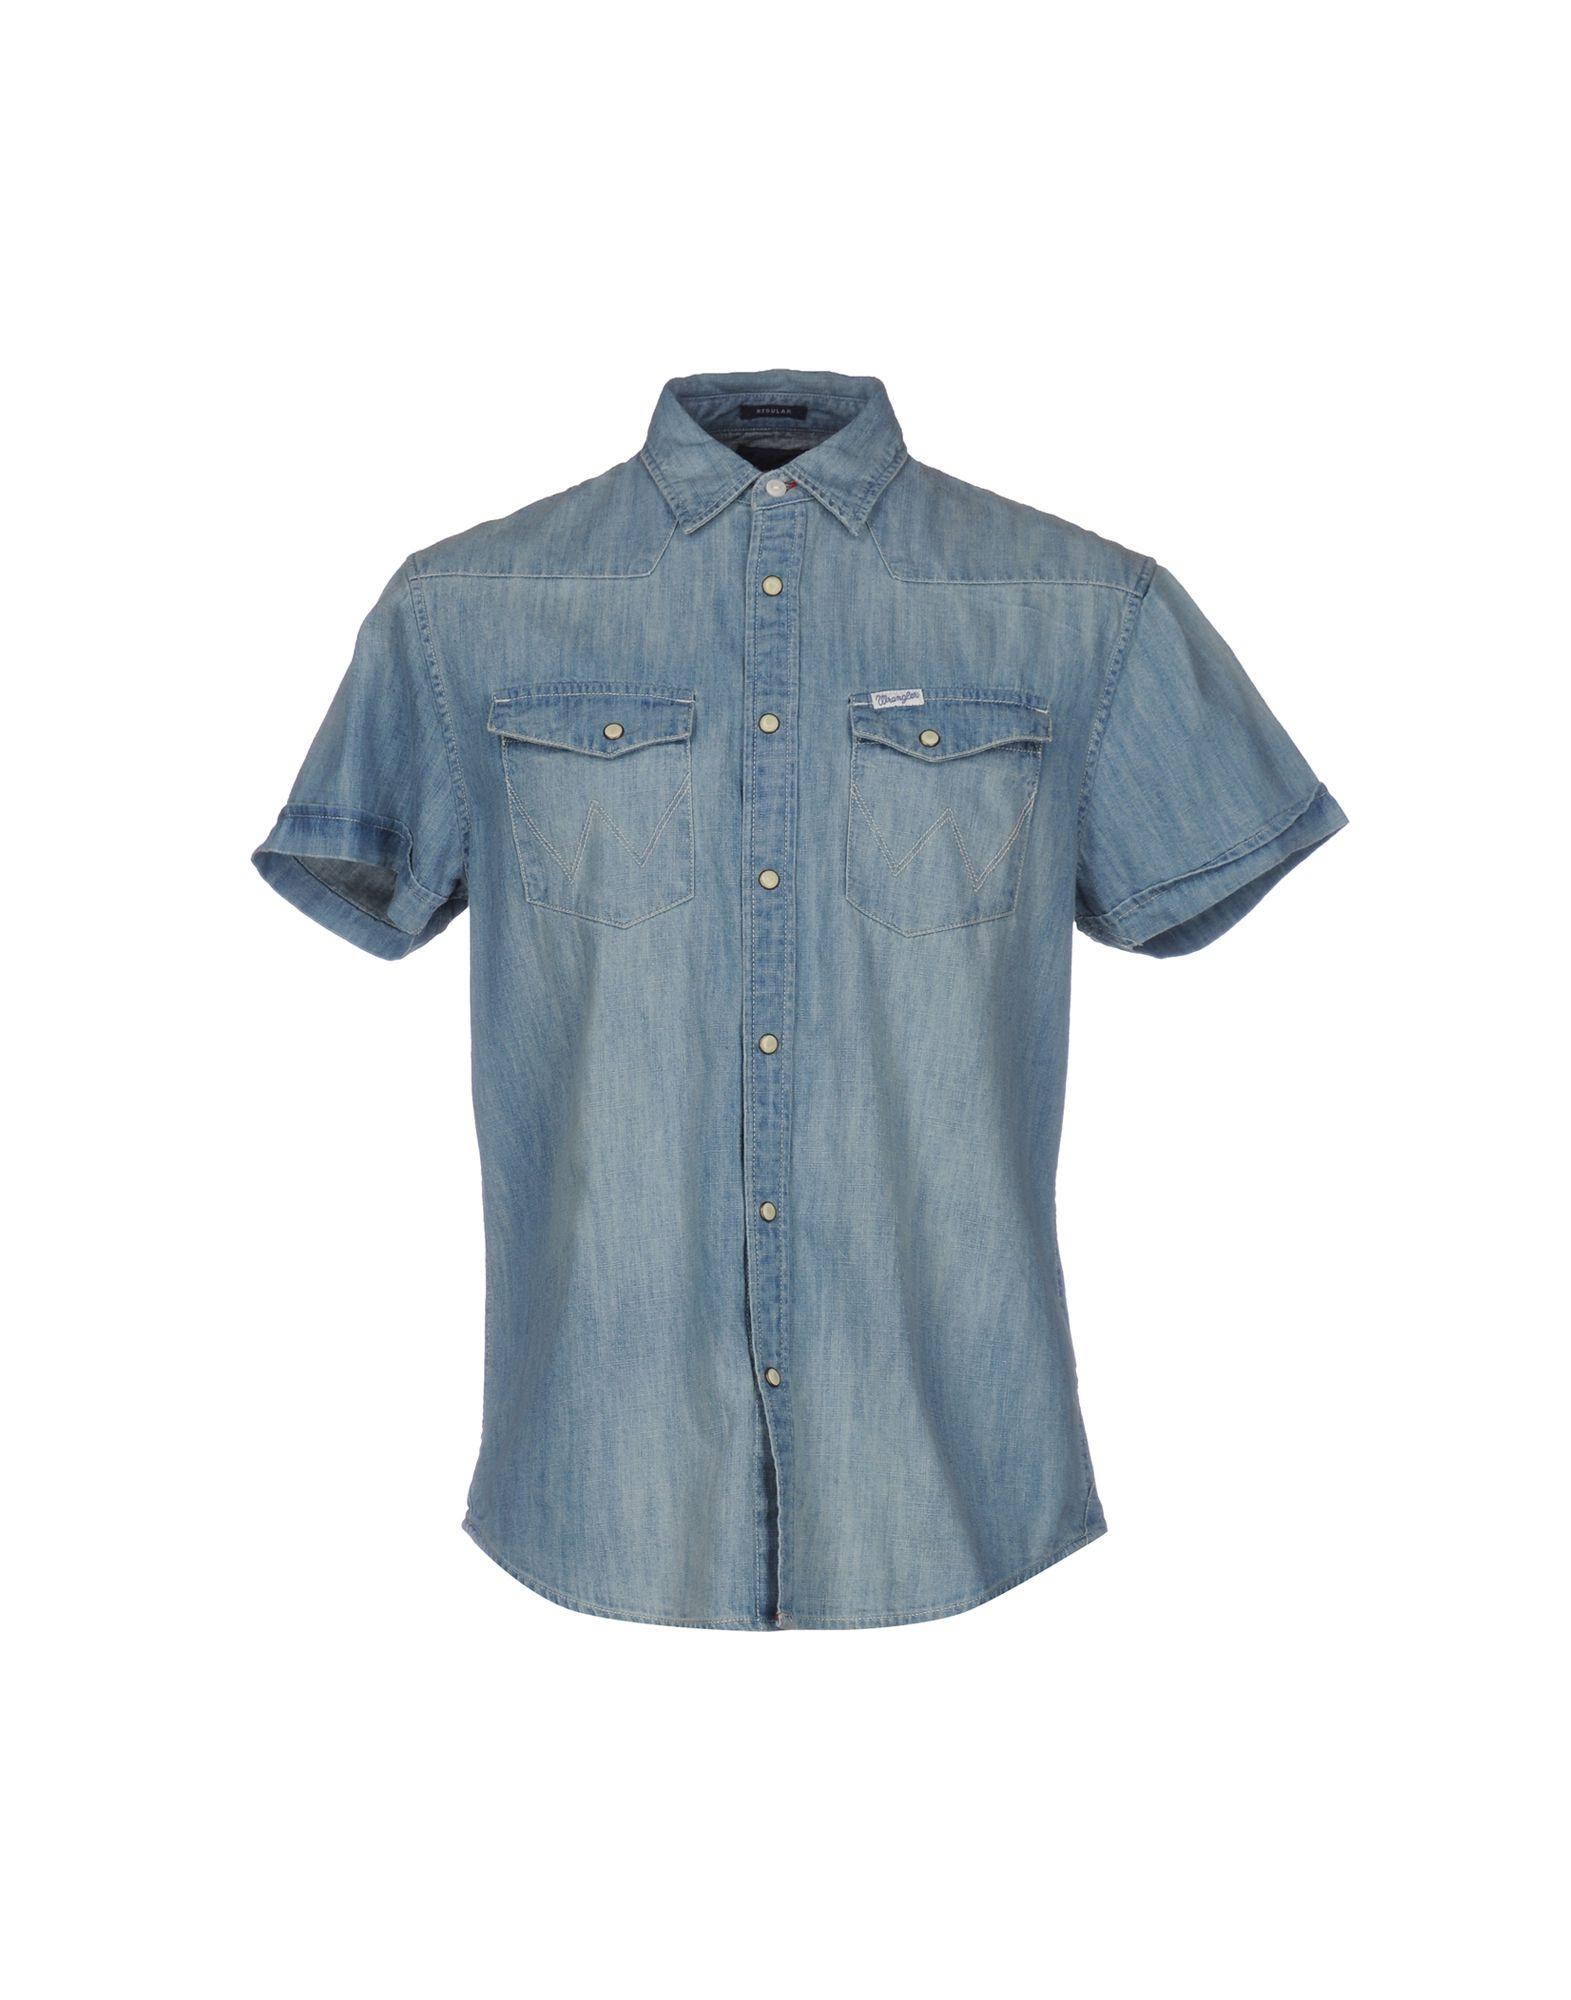 Lyst - Wrangler Denim Shirt in Blue for Men